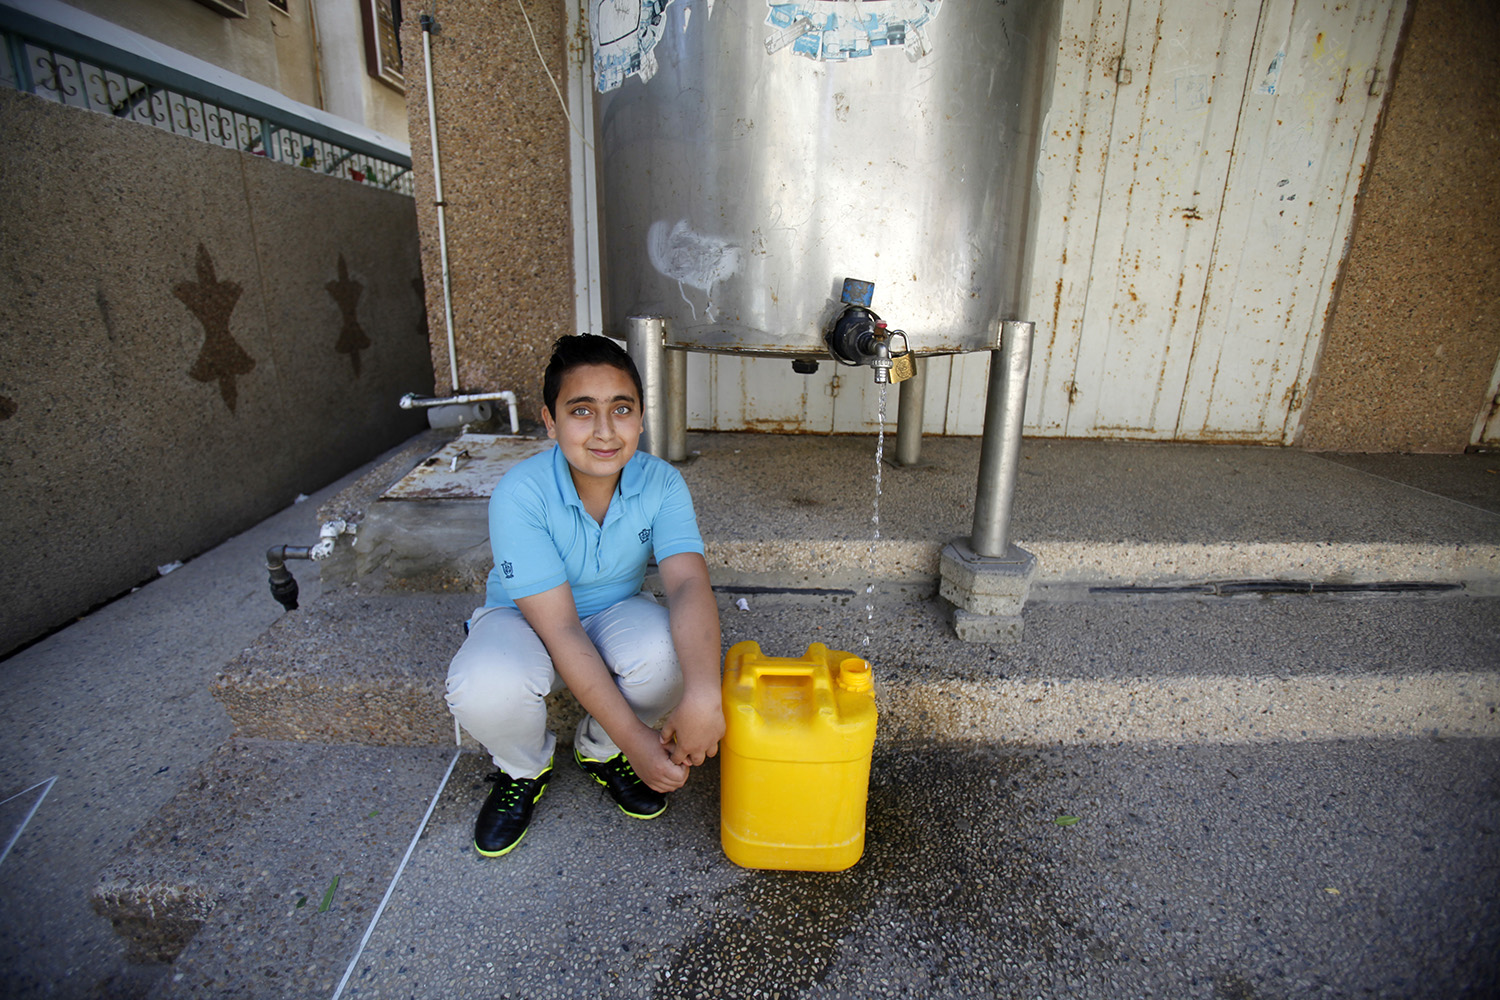 Ahmed füllt einen Kanister ab und hockt neben dem Wassertank.